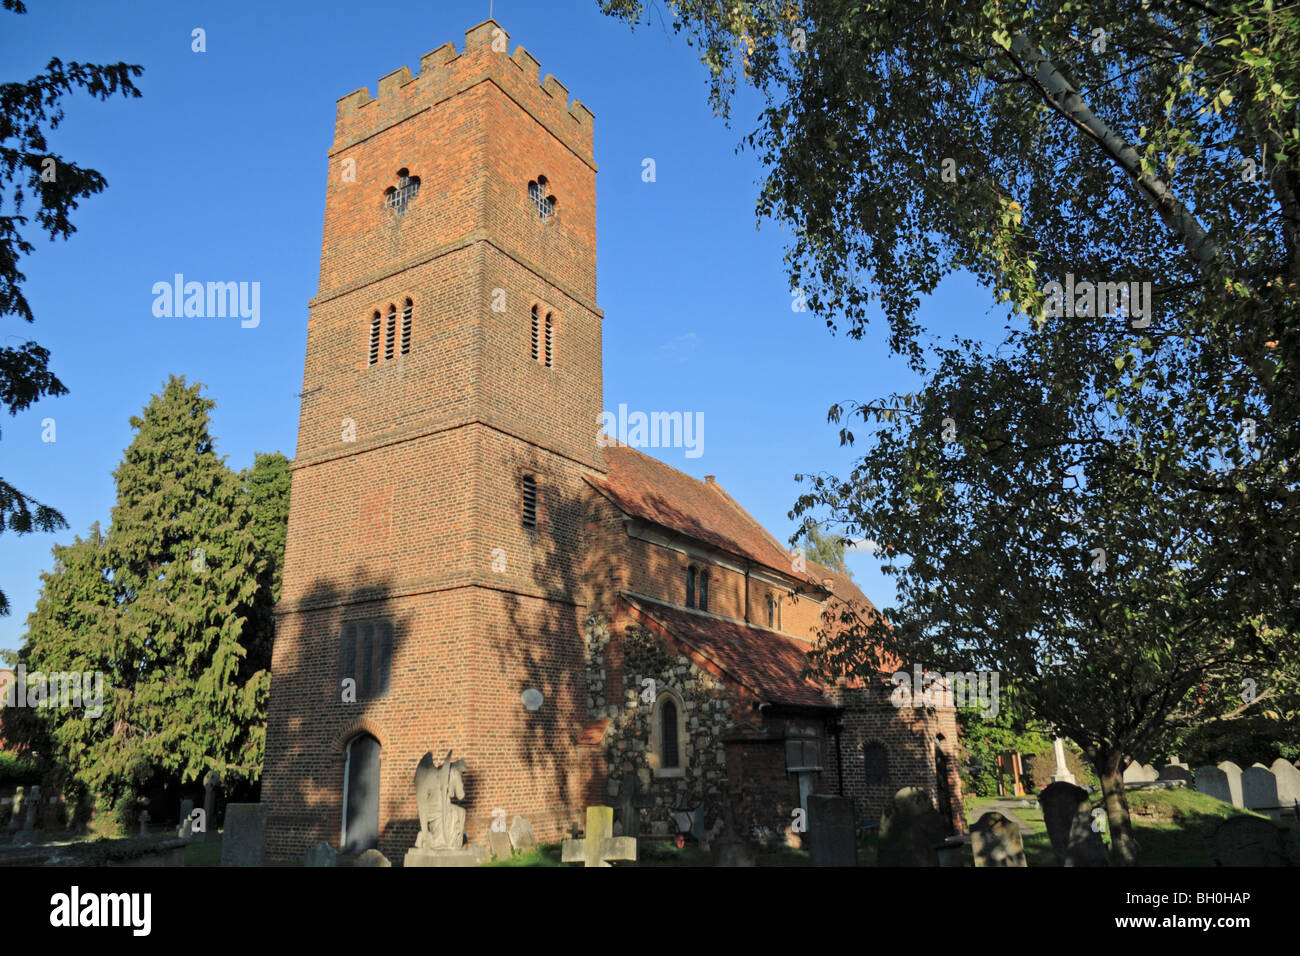 The St Mary Magdalene church, Littleton, Shepperton, UK. Stock Photo